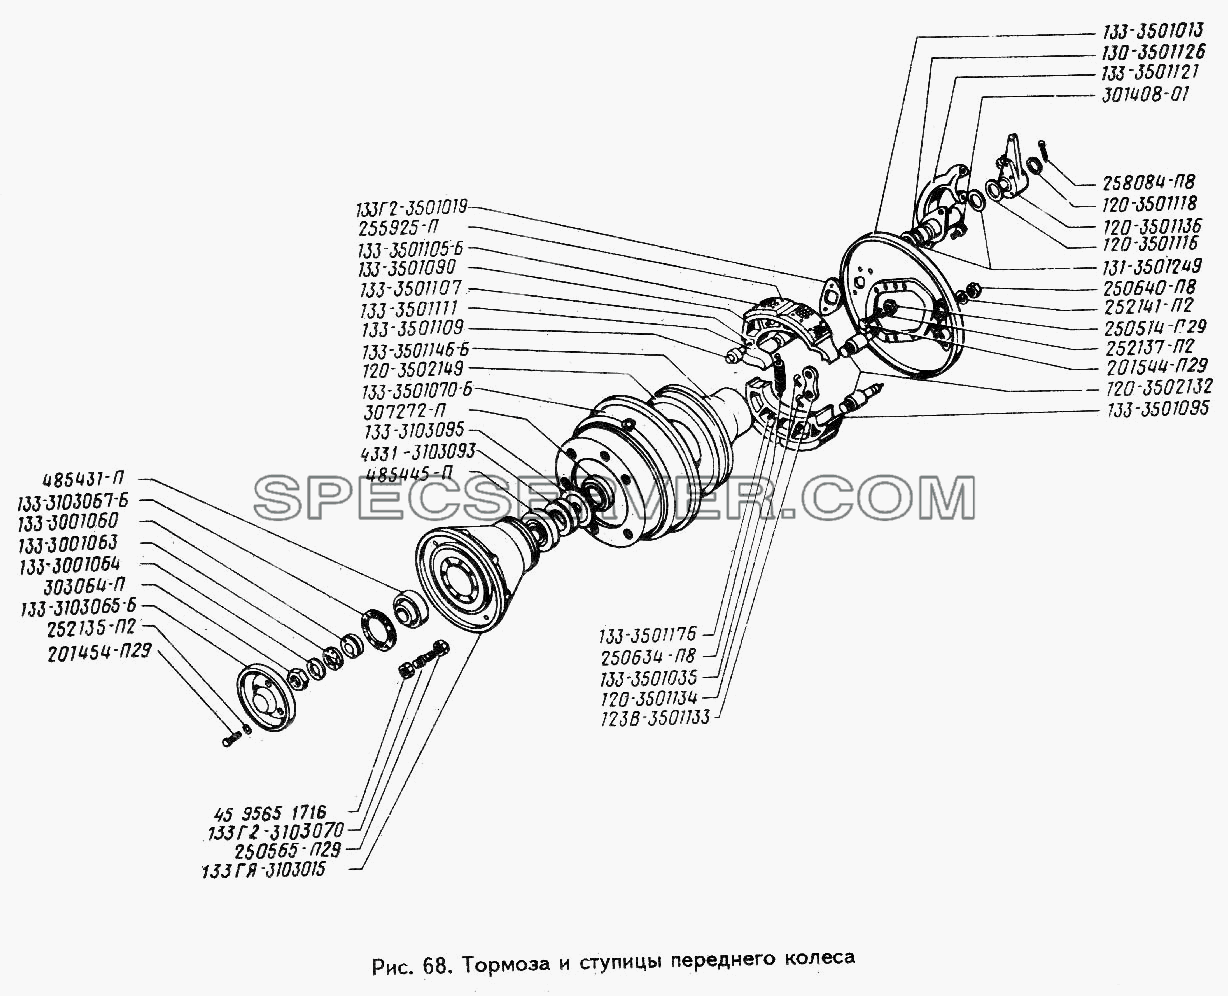 Тормоза и ступицы переднего колеса для ЗИЛ 442160 (список запасных частей)